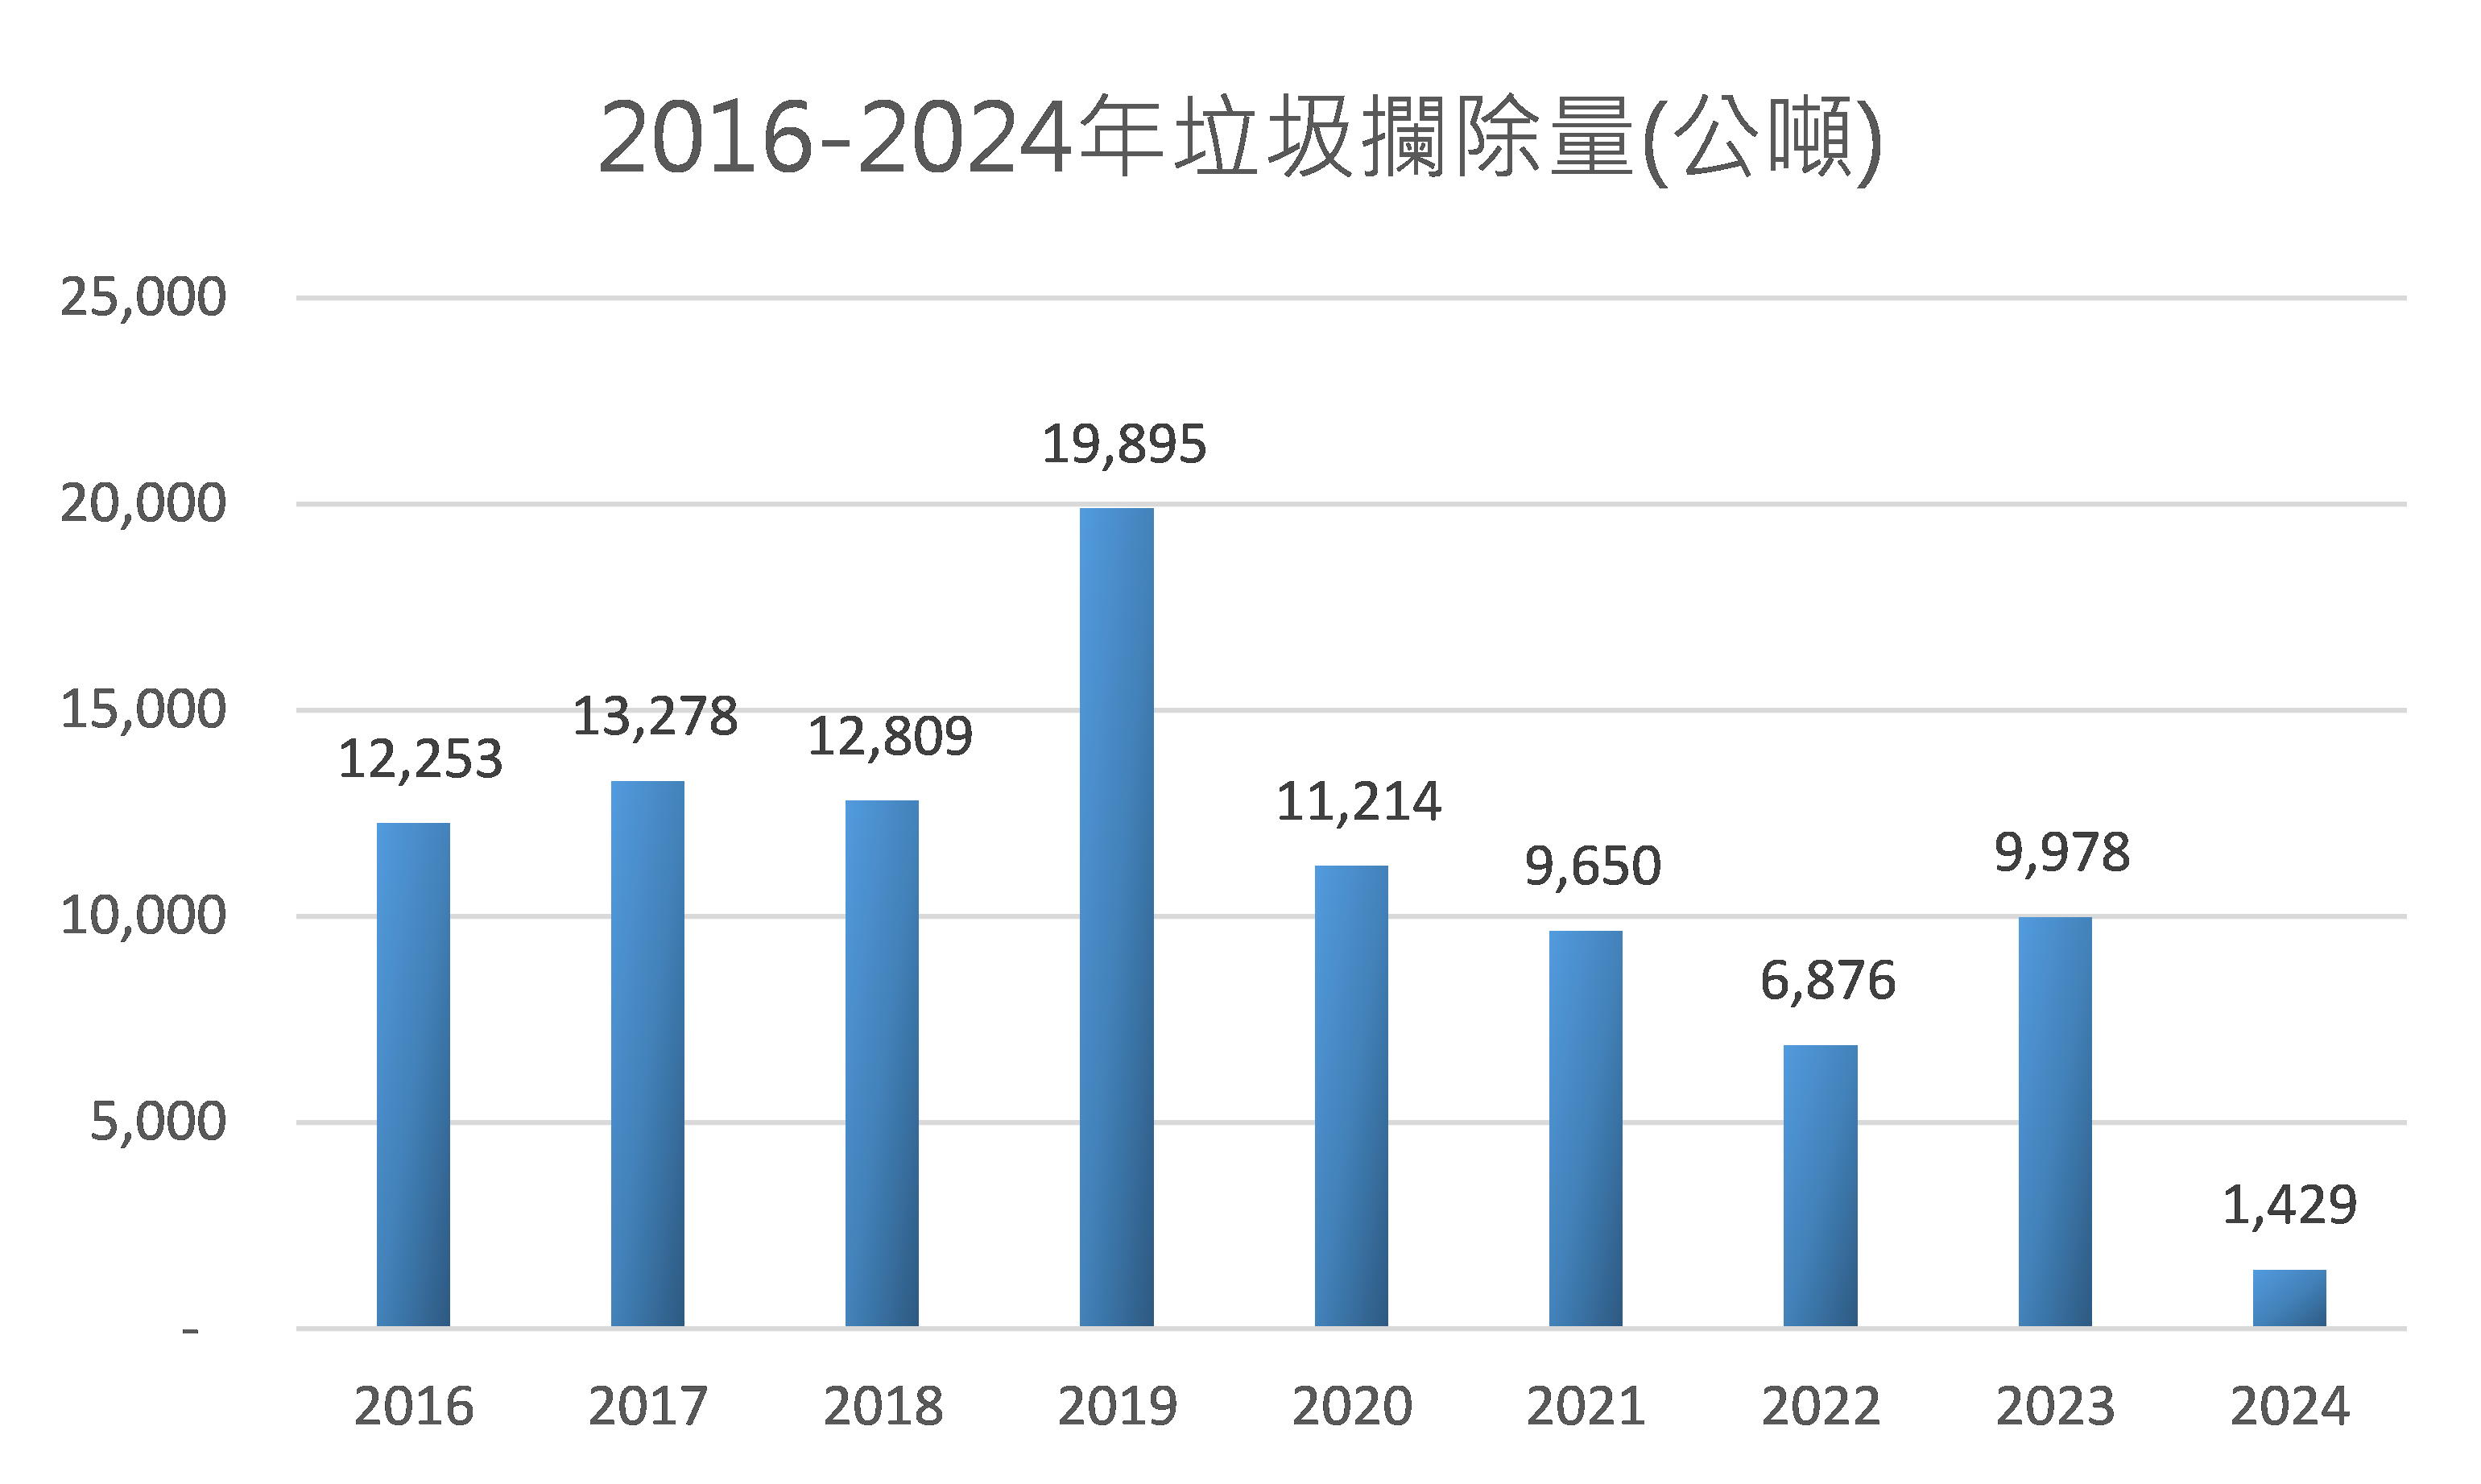 2016-2024年垃圾攔除量